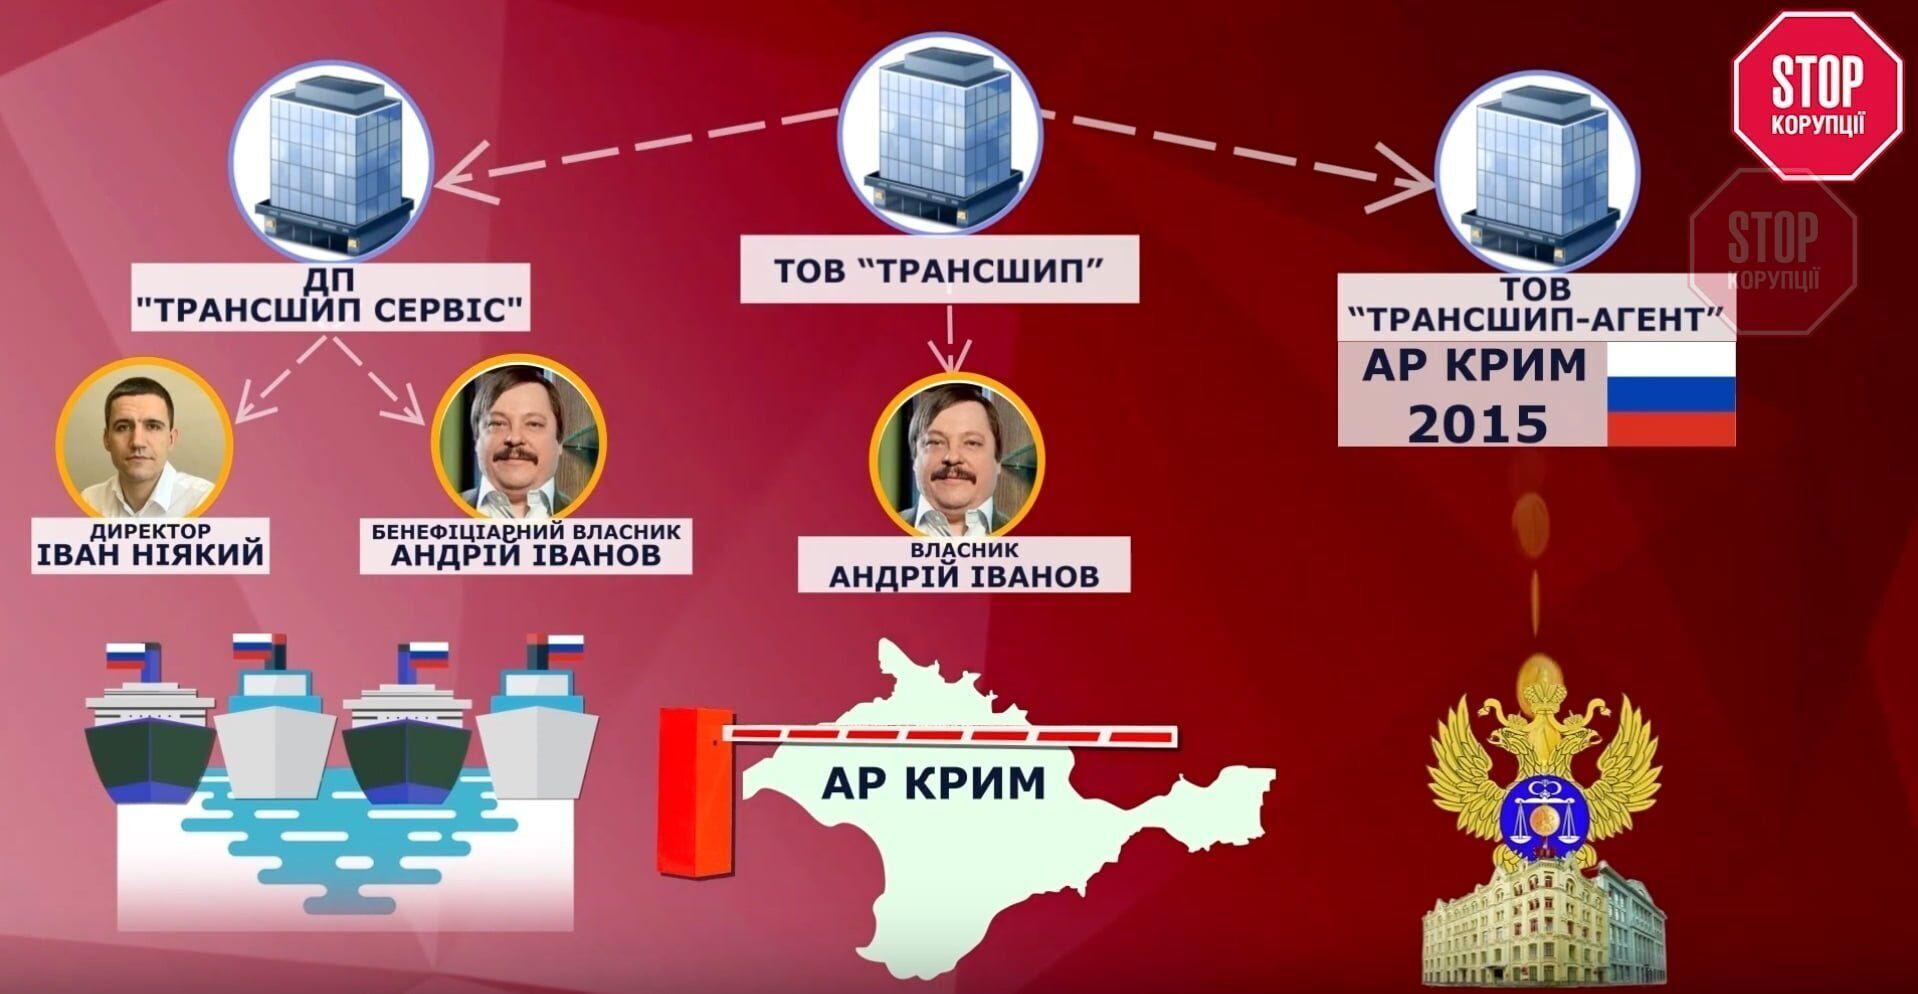  ''Трансшип'' фігурує у кількох справах, пов'язаних із незаконною співпрацею з росіянами Фото: СтопКор